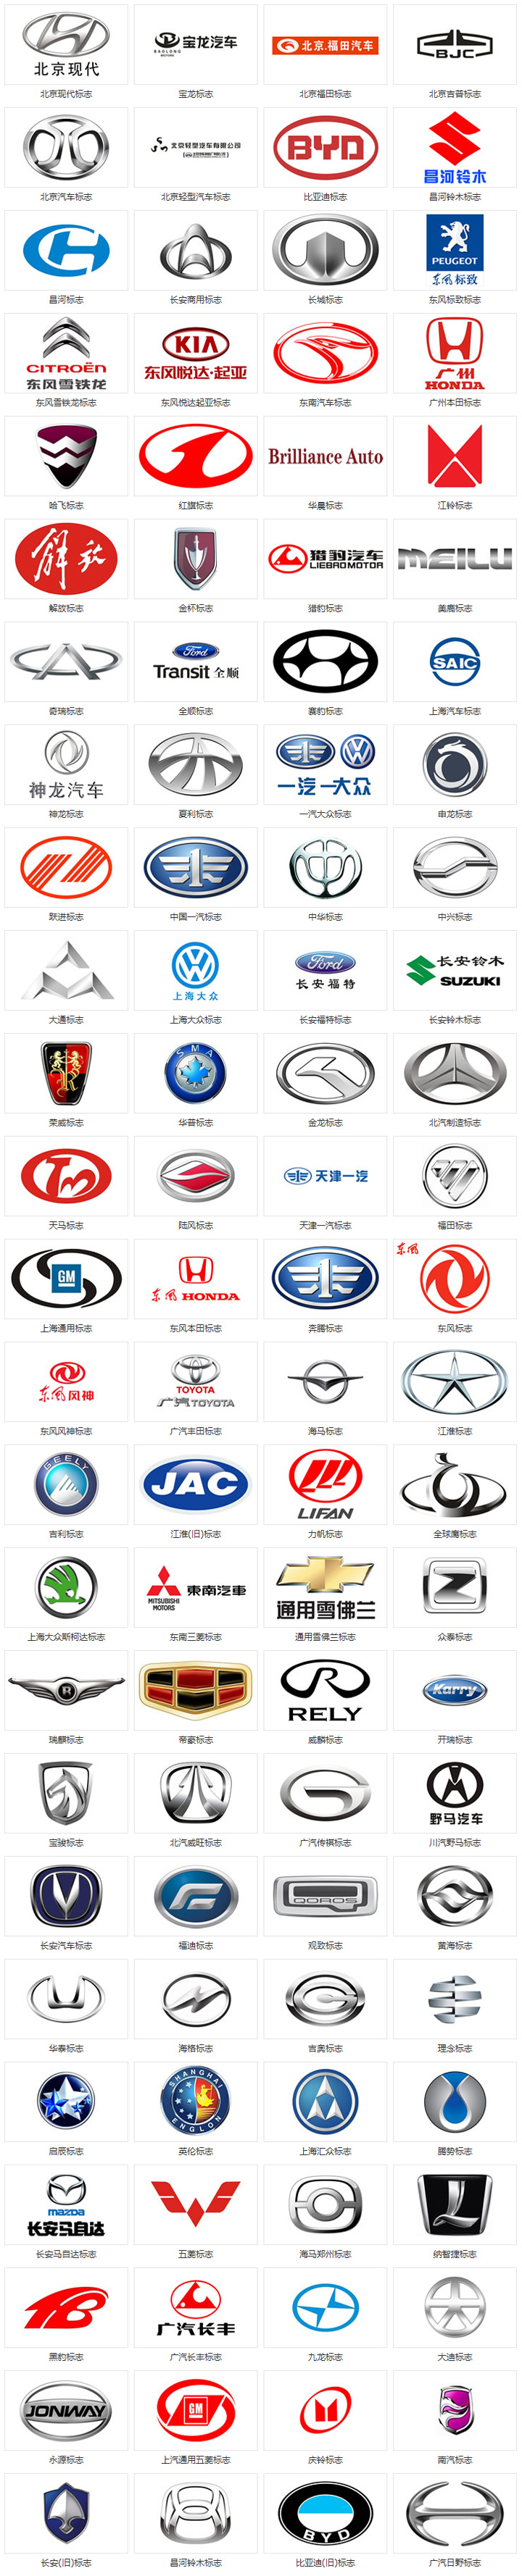 国产汽车品牌标志大全及名字和图片